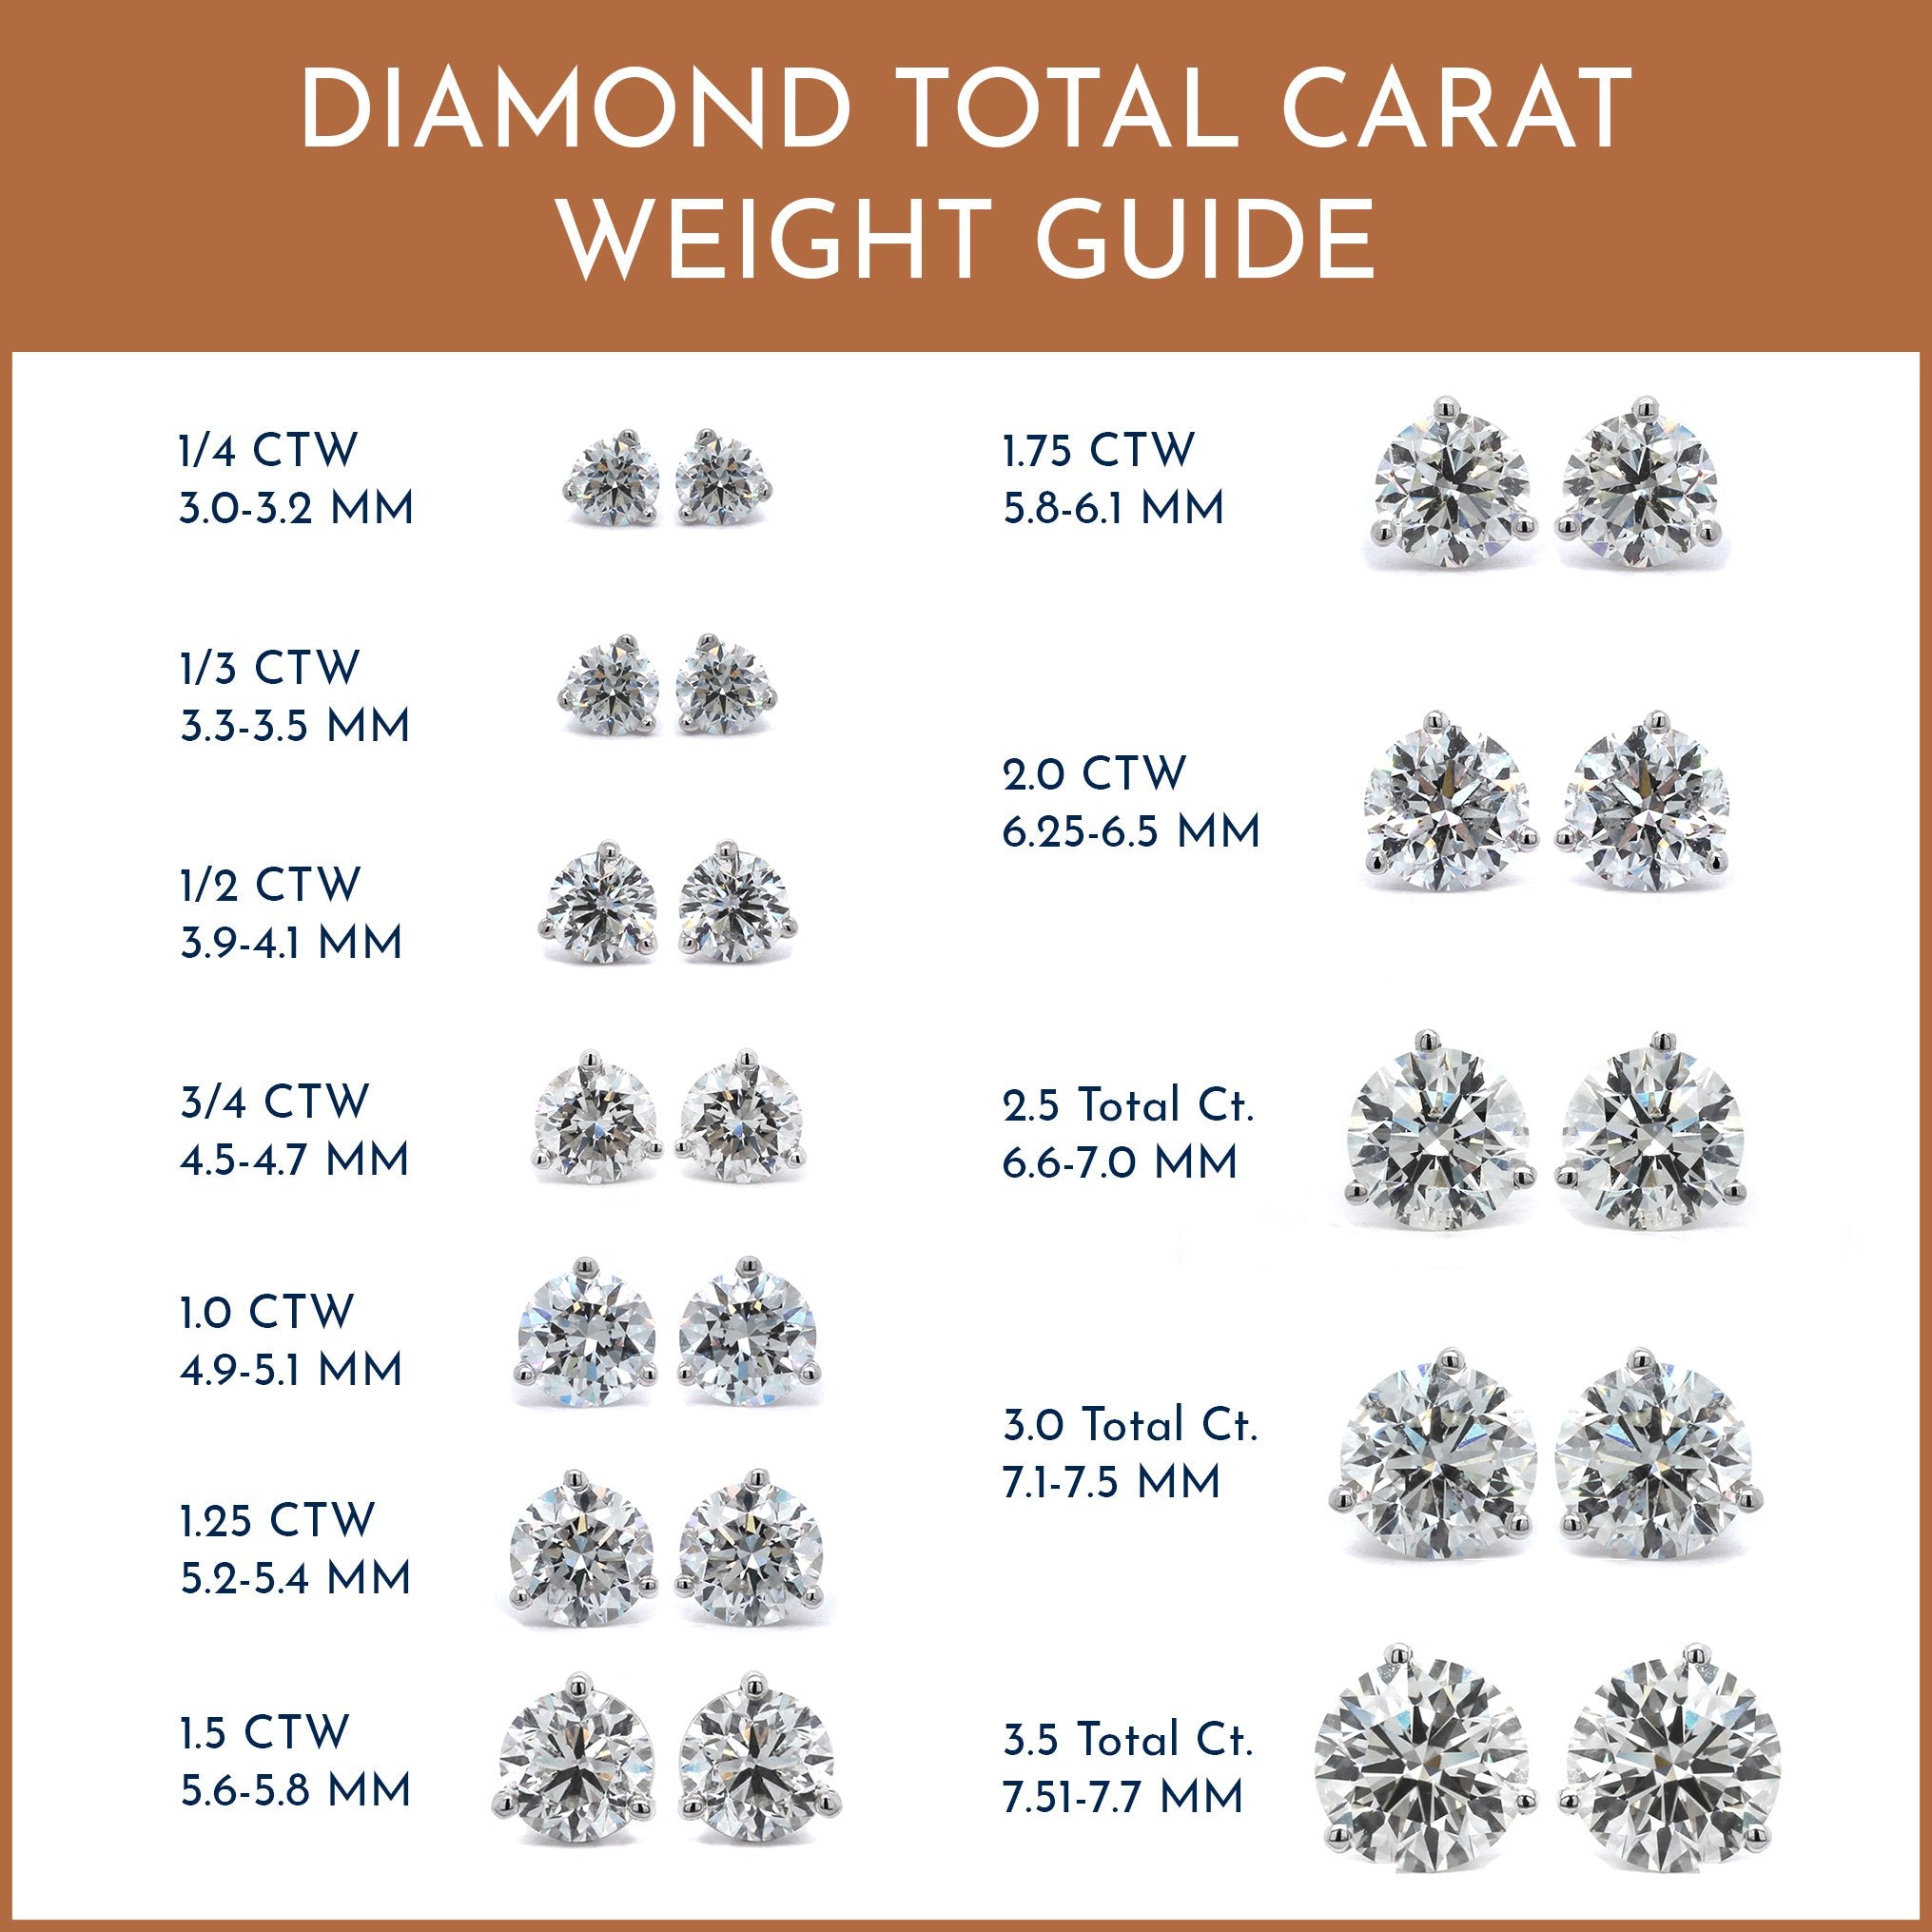 14K White Gold 3/4CTW Diamond Stud Earrings